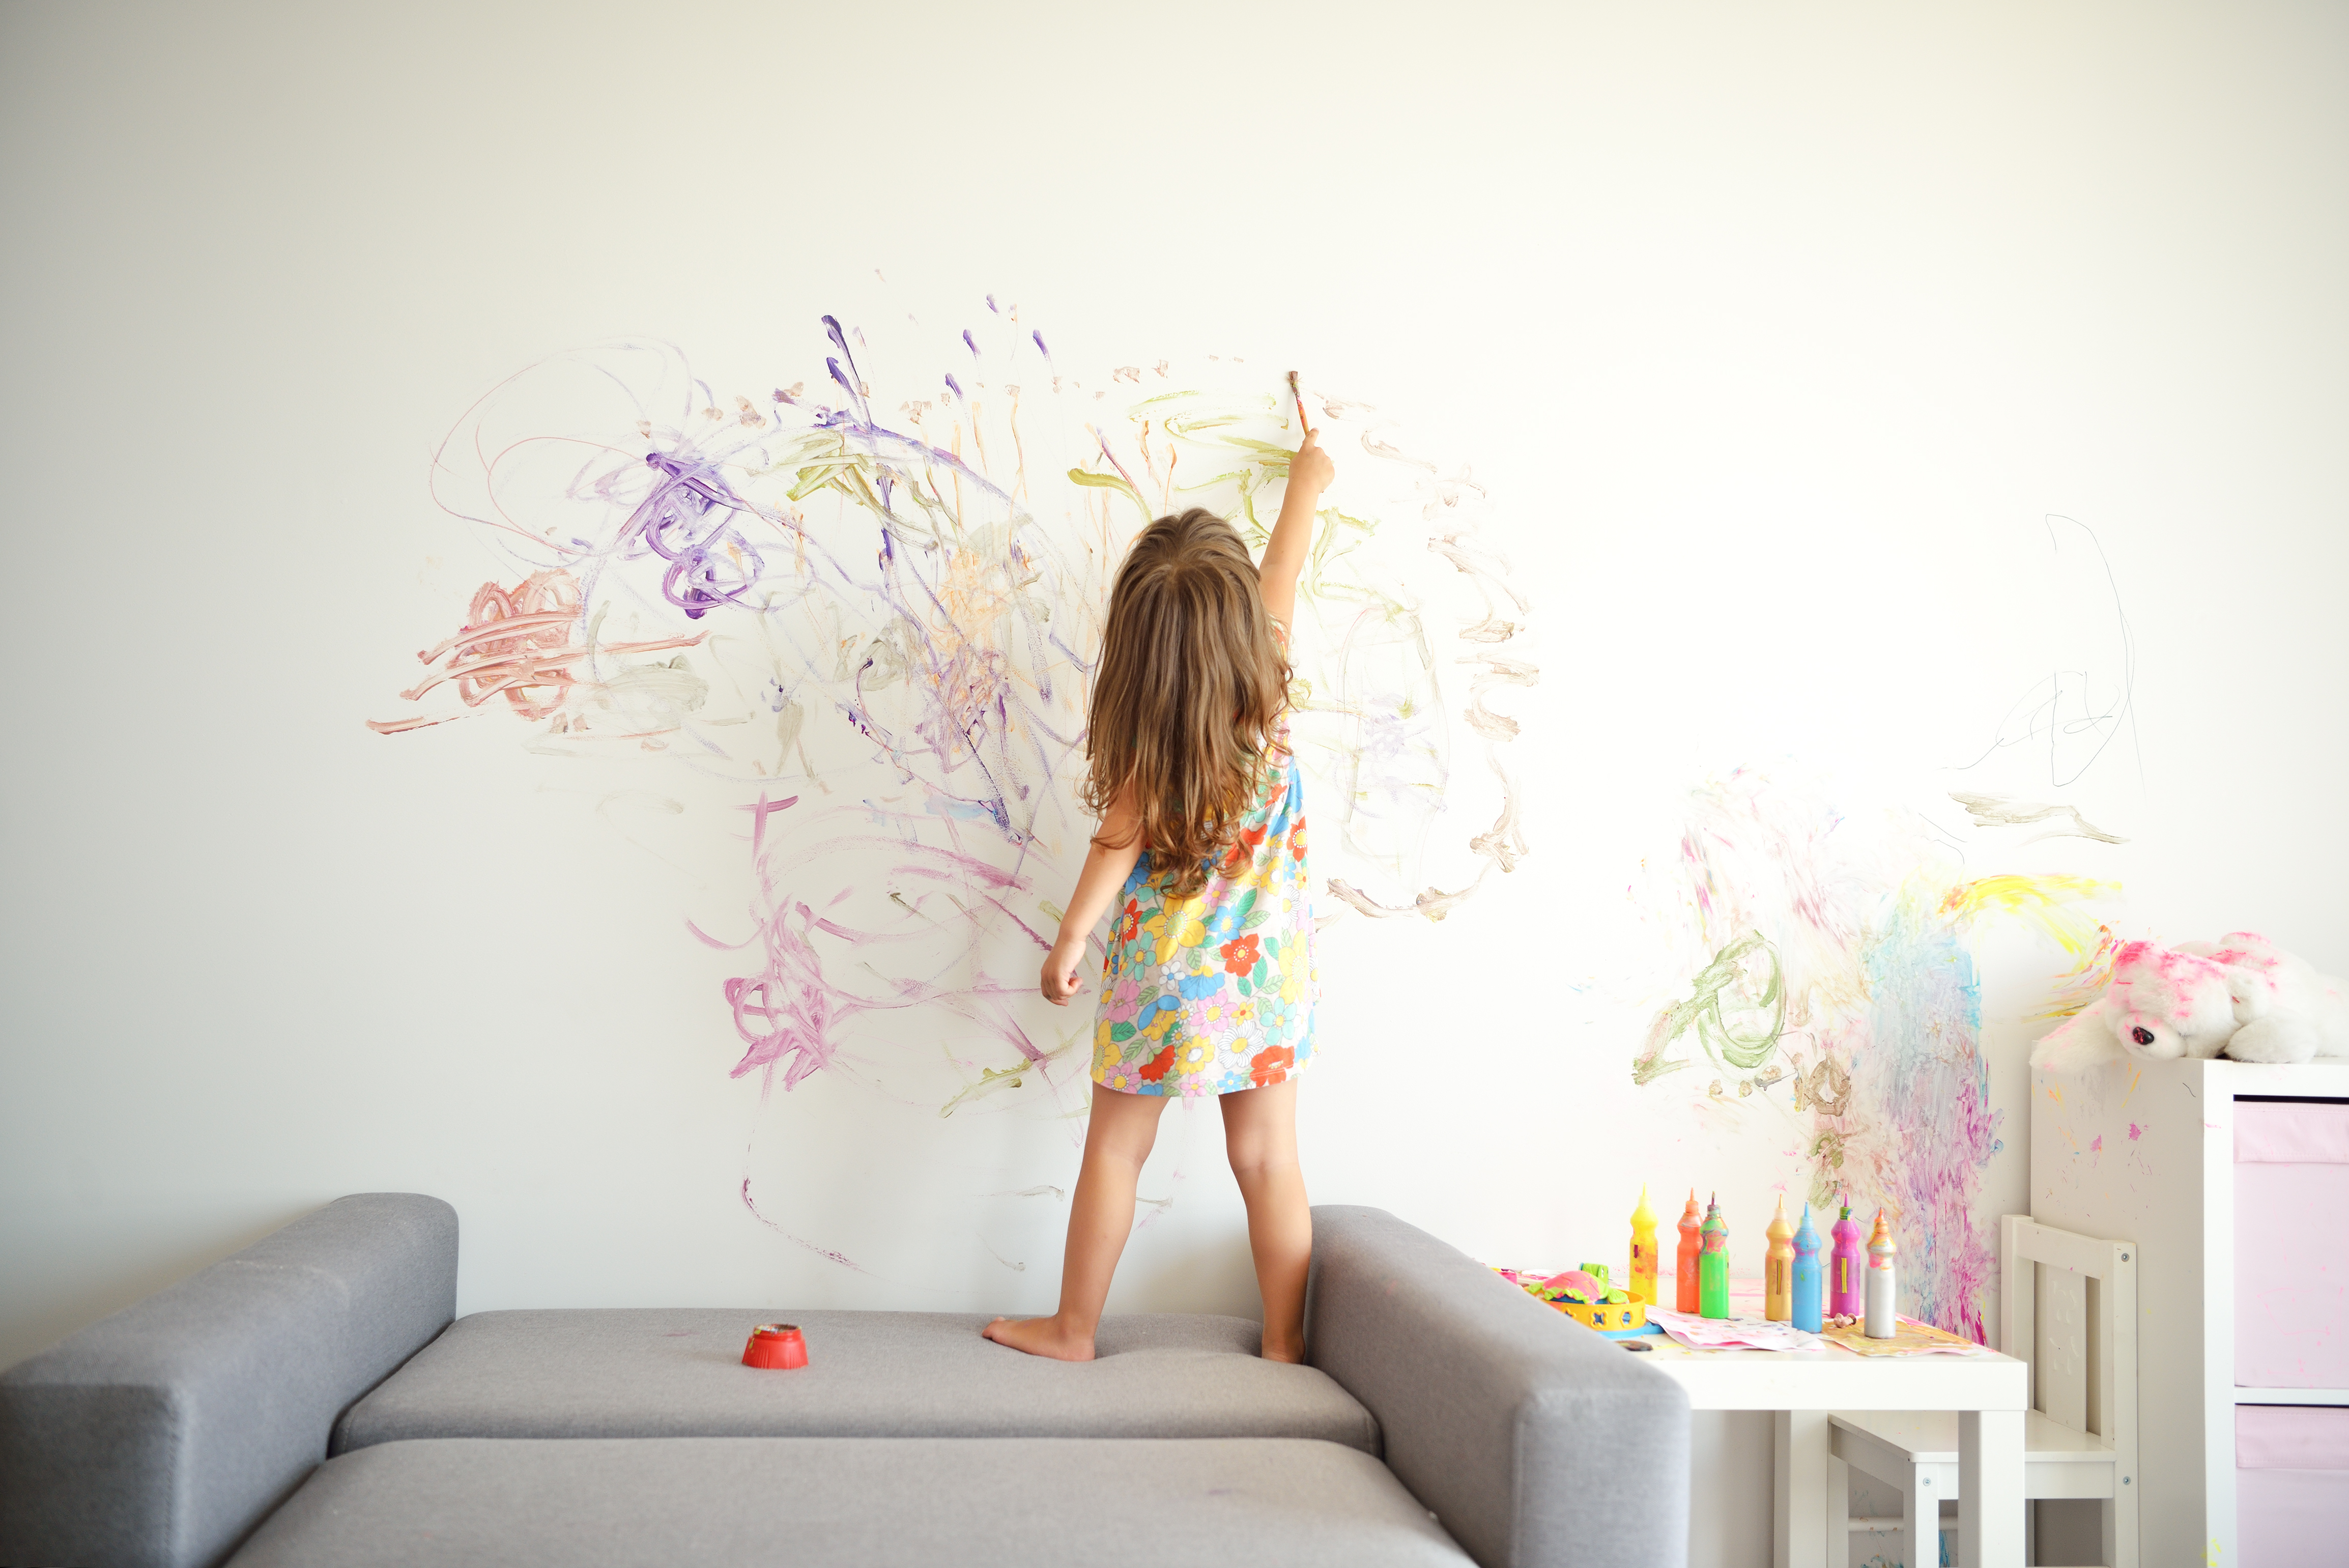 A child's drawing. Ребенок рисует на стене. Ребенок разрисовал стены. Ребенок рисует на обоях. Краска для рисования на стенах.